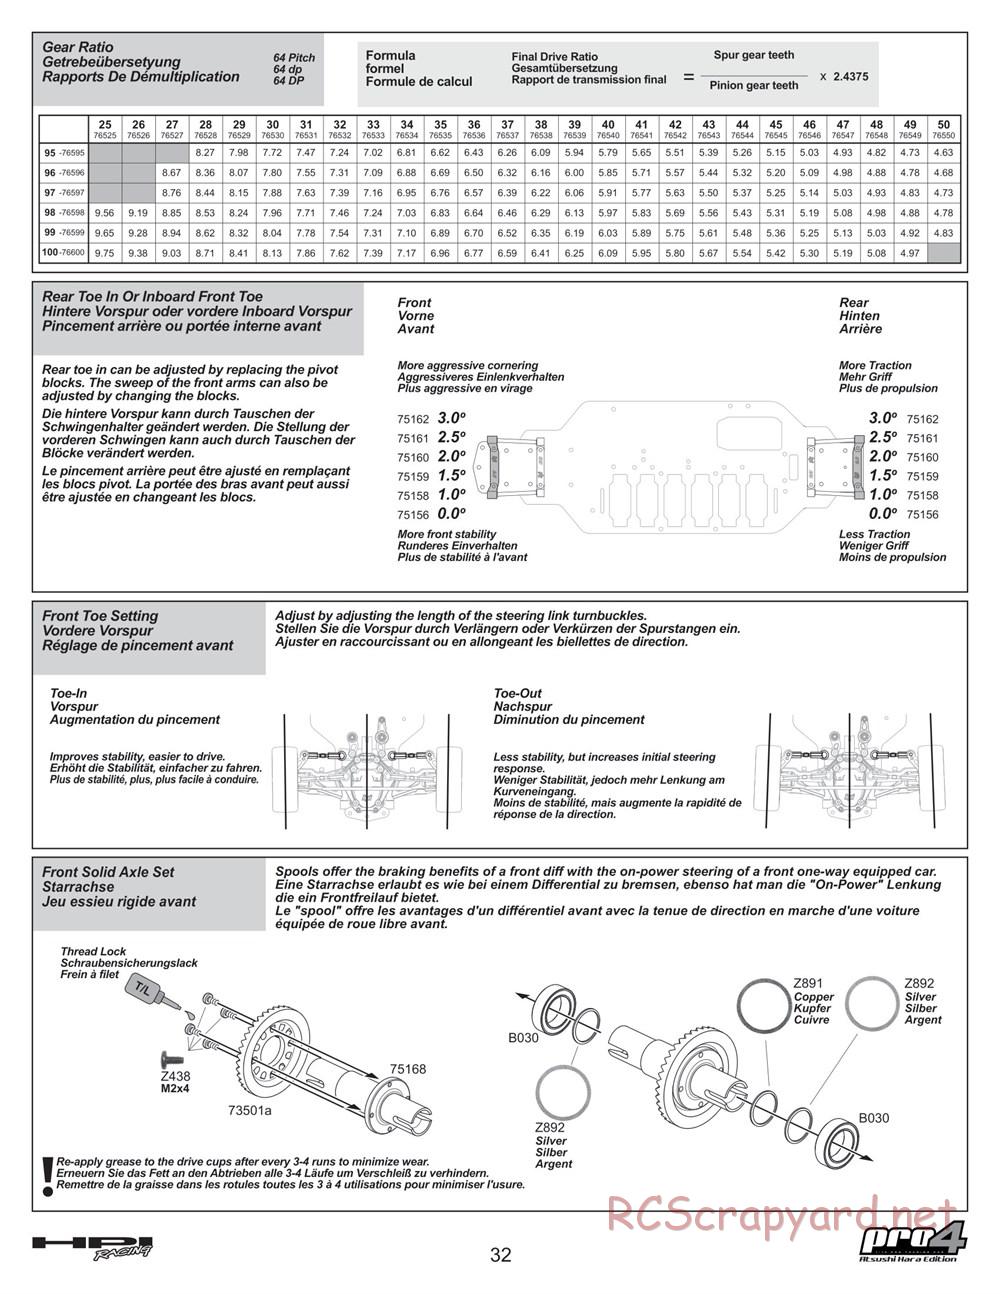 HPI - Pro4 Hara Edition - Manual - Page 32